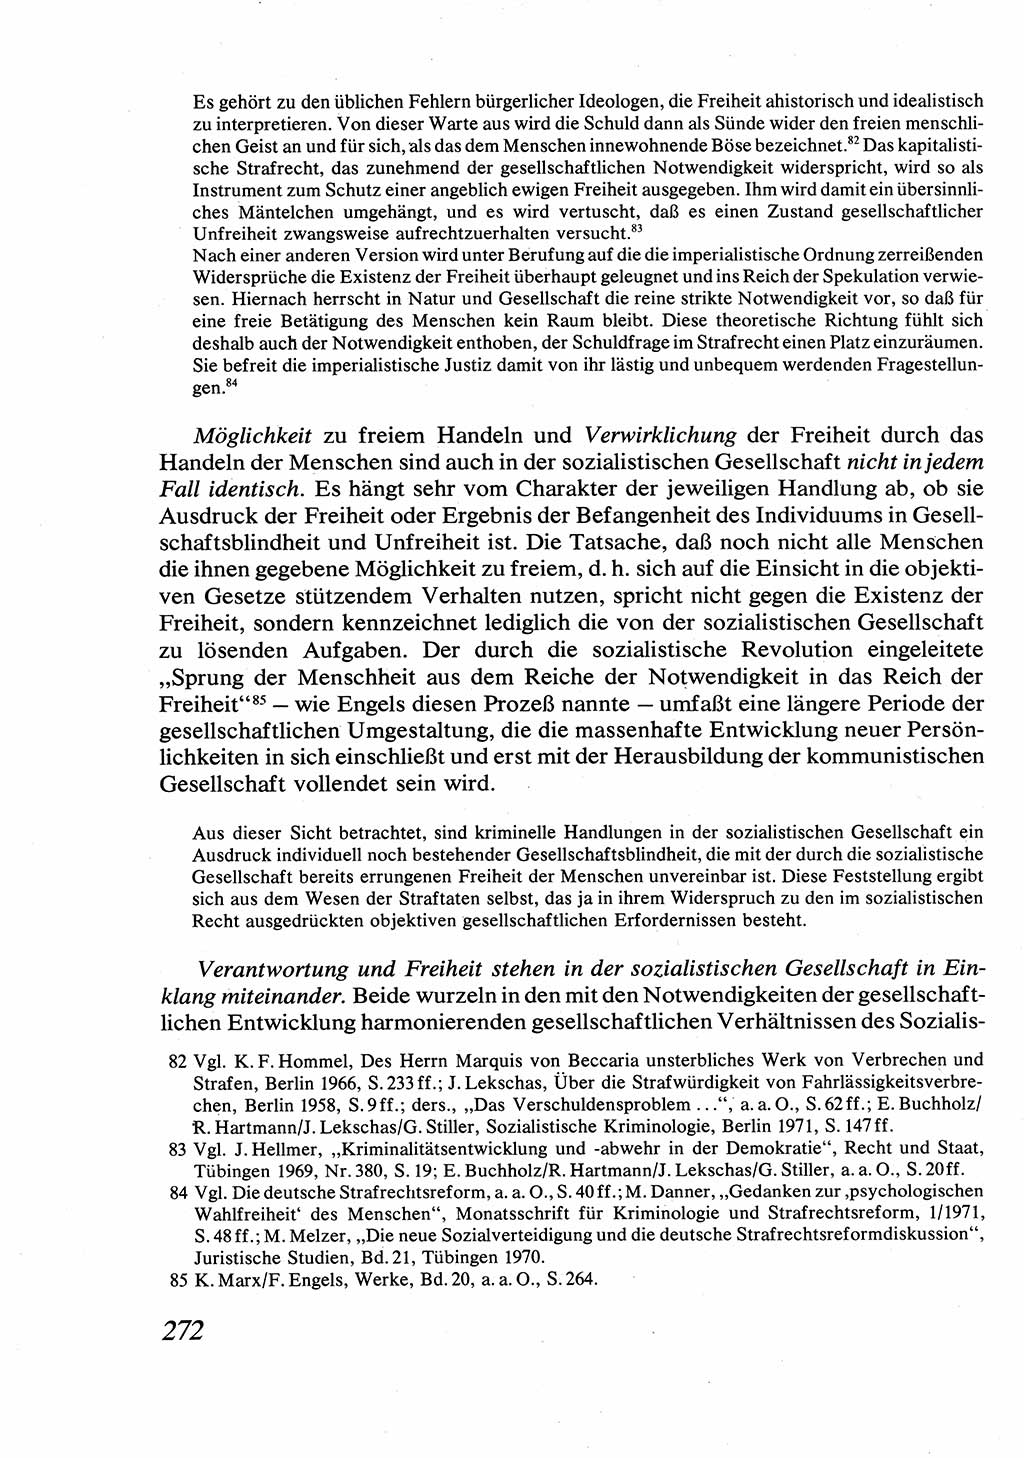 Strafrecht [Deutsche Demokratische Republik (DDR)], Allgemeiner Teil, Lehrbuch 1976, Seite 272 (Strafr. DDR AT Lb. 1976, S. 272)